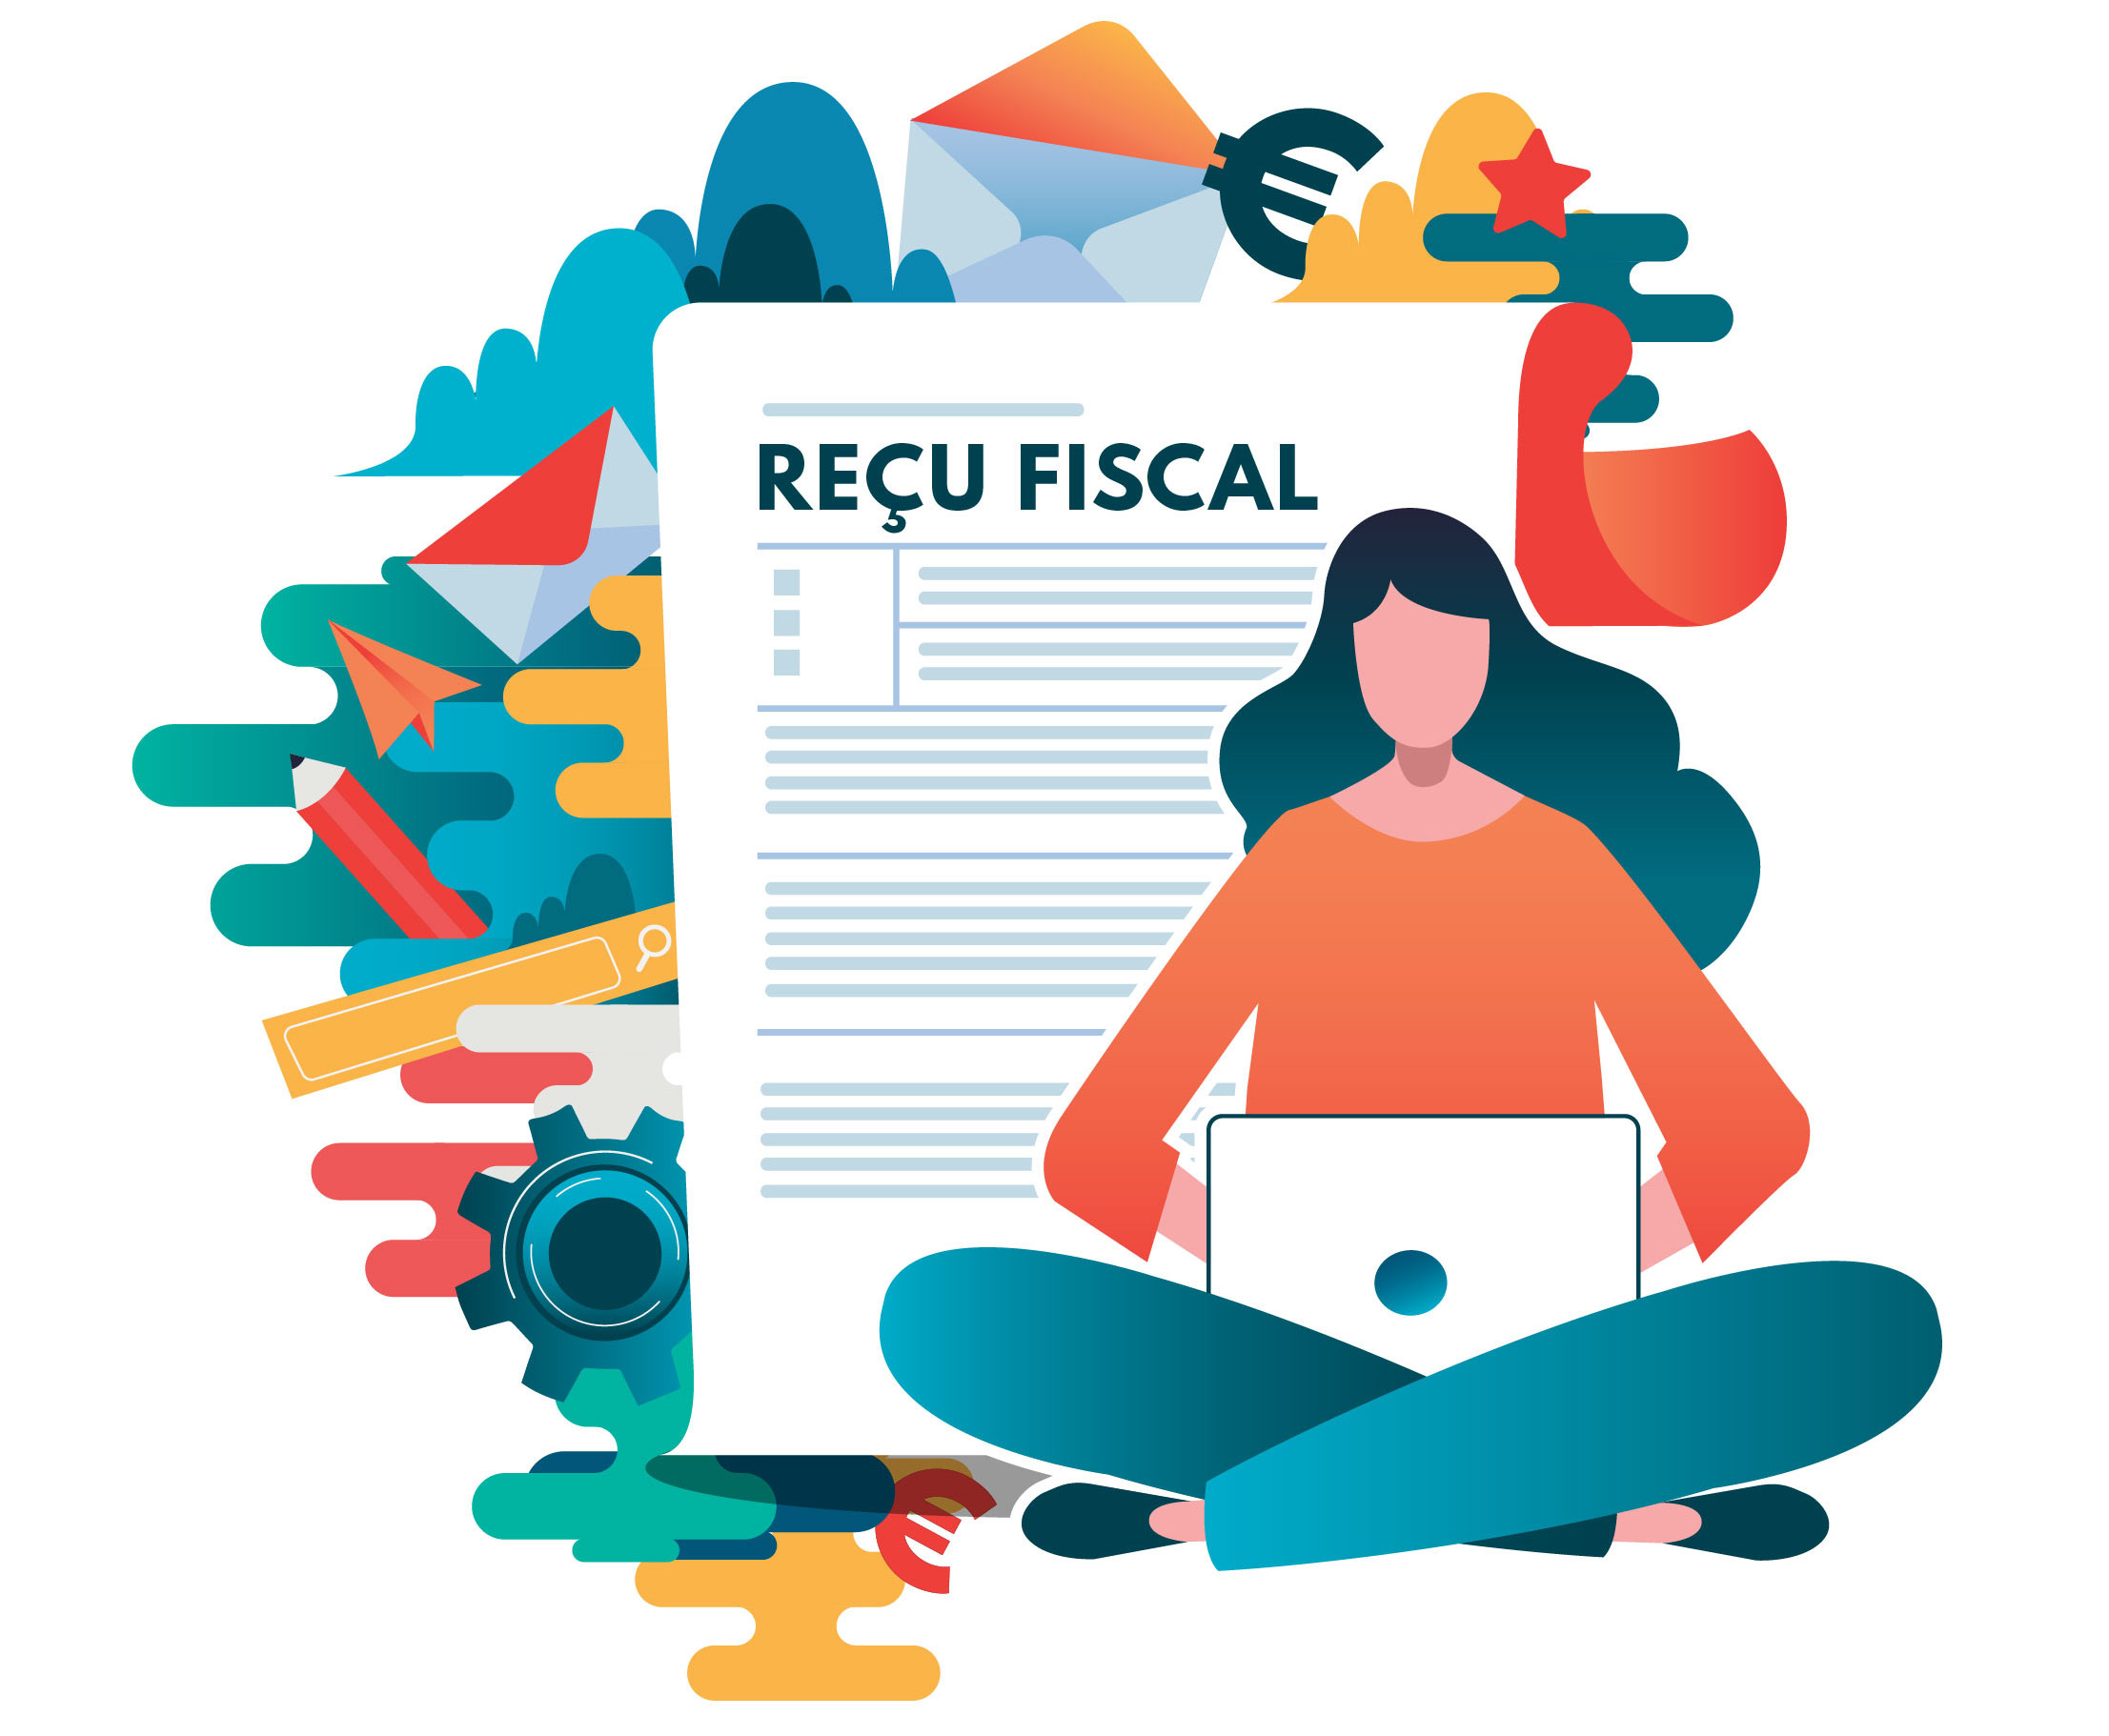 Recu_fiscal